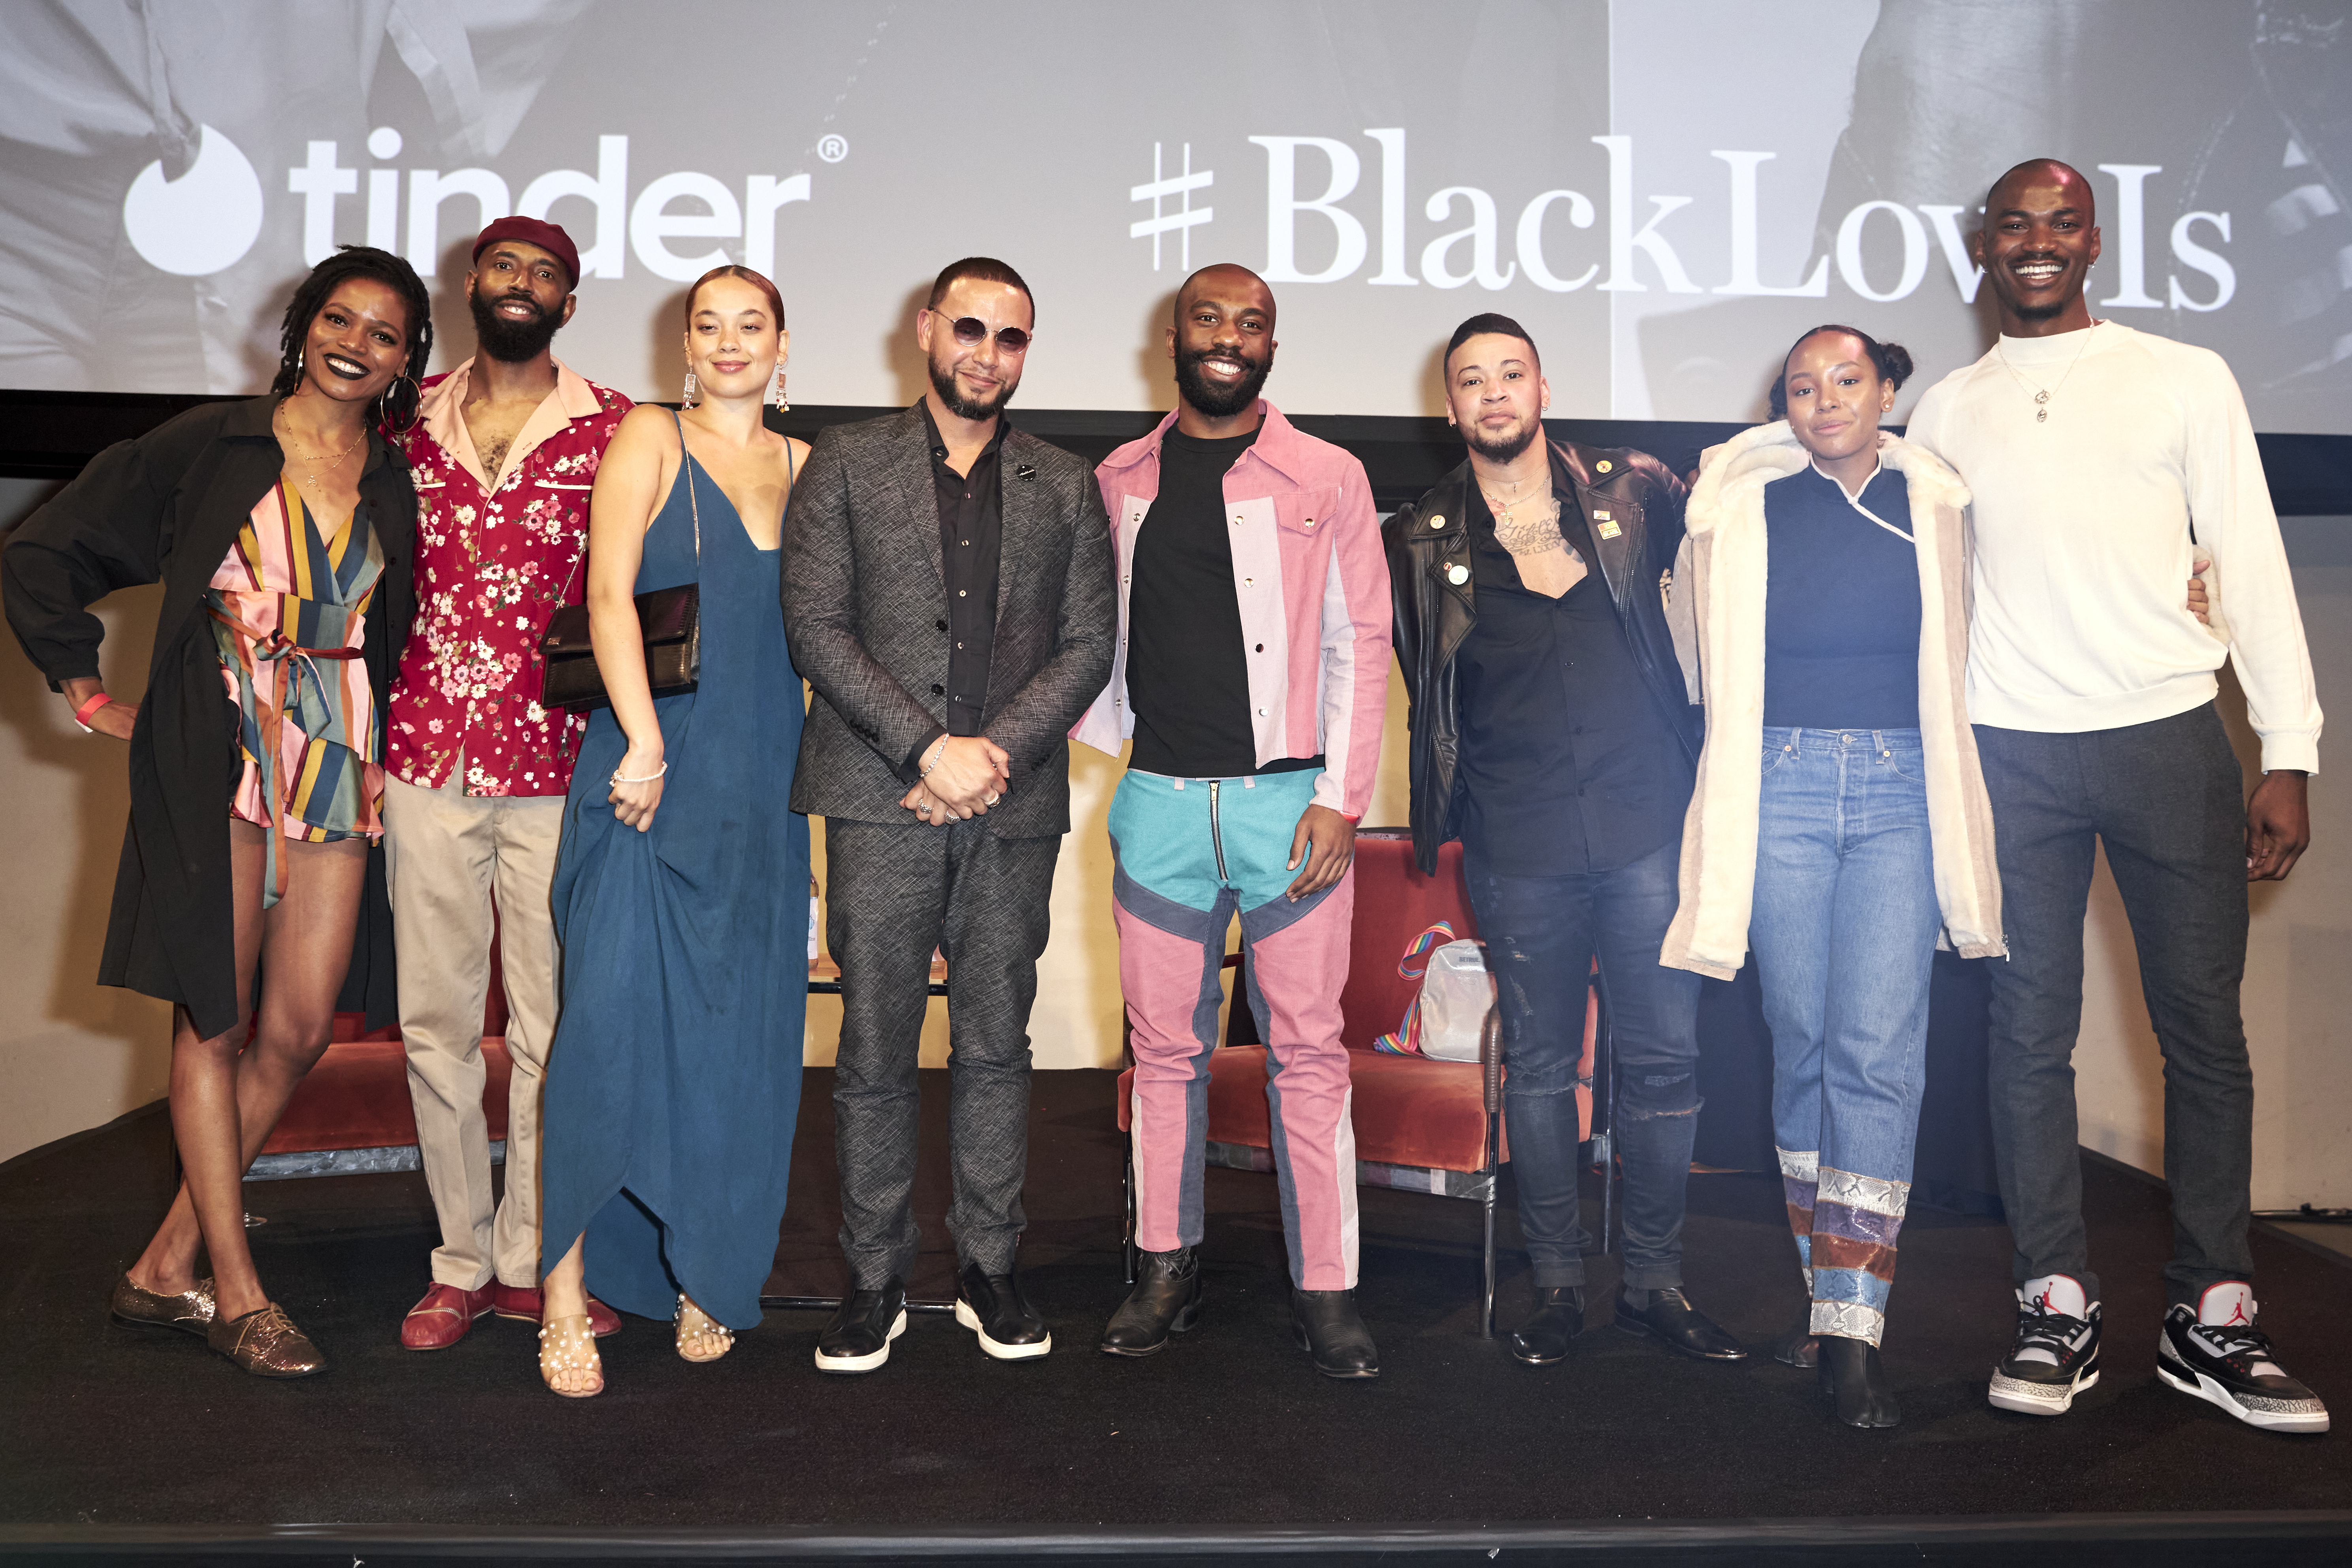 Director X & Tinder Come Together For New Original Short, #BlackLoveIs